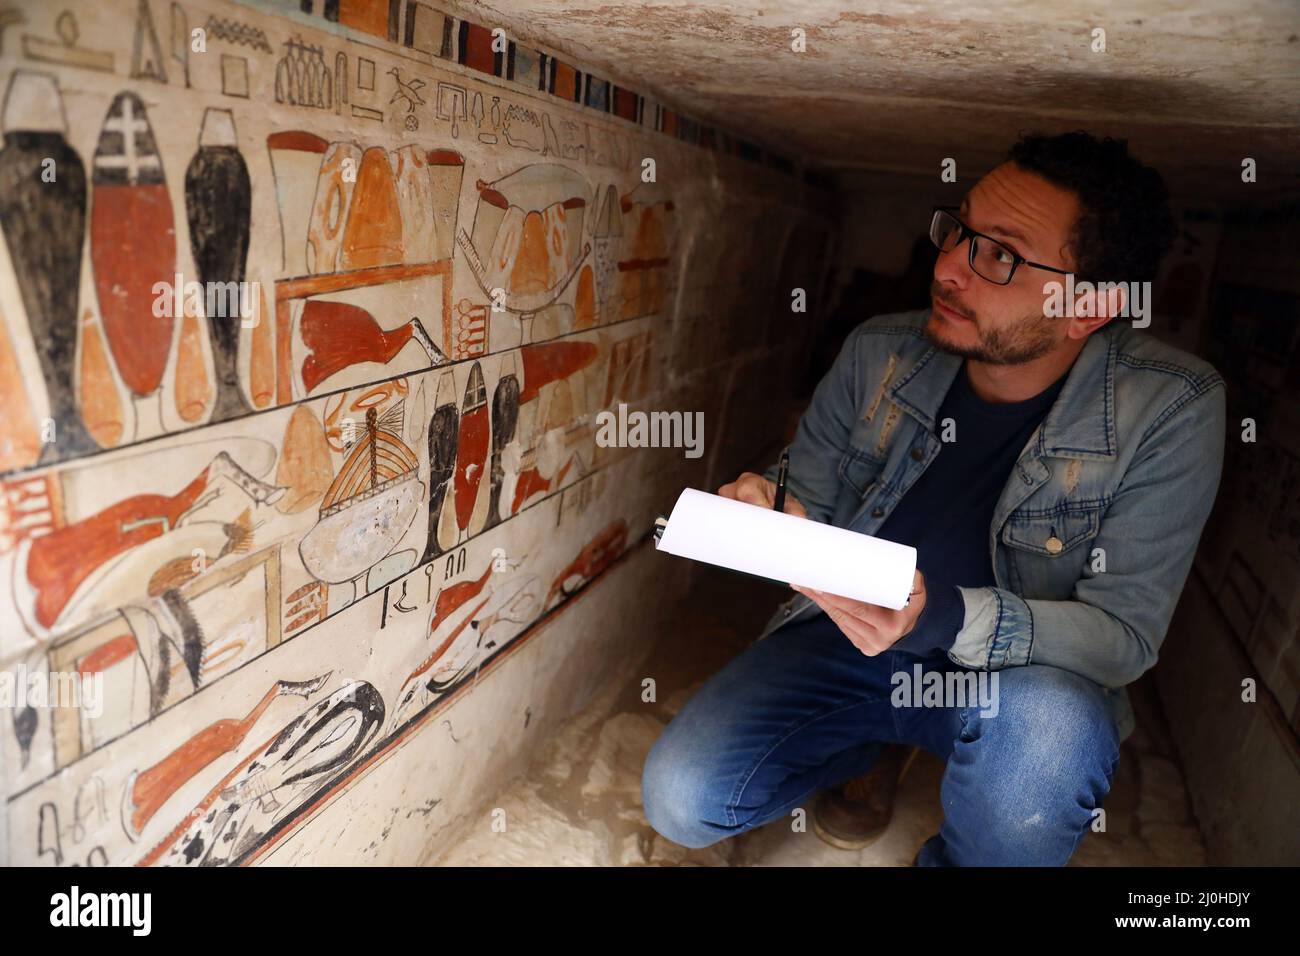 (220319) -- LE CAIRE, le 19 mars 2022 (Xinhua) -- un archéologue vérifie la peinture murale dans un ancien tombeau découvert aux sites archéologiques de Saqqara au sud-ouest du Caire, en Égypte, le 19 mars 2022. Le ministère égyptien du Tourisme et des Antiquités a annoncé jeudi la découverte de cinq tombes anciennes de 4 000 ans dans les sites archéologiques de Saqqara, au sud-ouest du Caire. Les tombes contiennent des découvertes et des objets datant de la fin de l'ancien Royaume s'étendant de 2686 BC à 2181 BC et le début de la première période intermédiaire s'étendant de 2181 BC à 2055 BC. POUR ALLER AVEC 'Egypt discove Banque D'Images